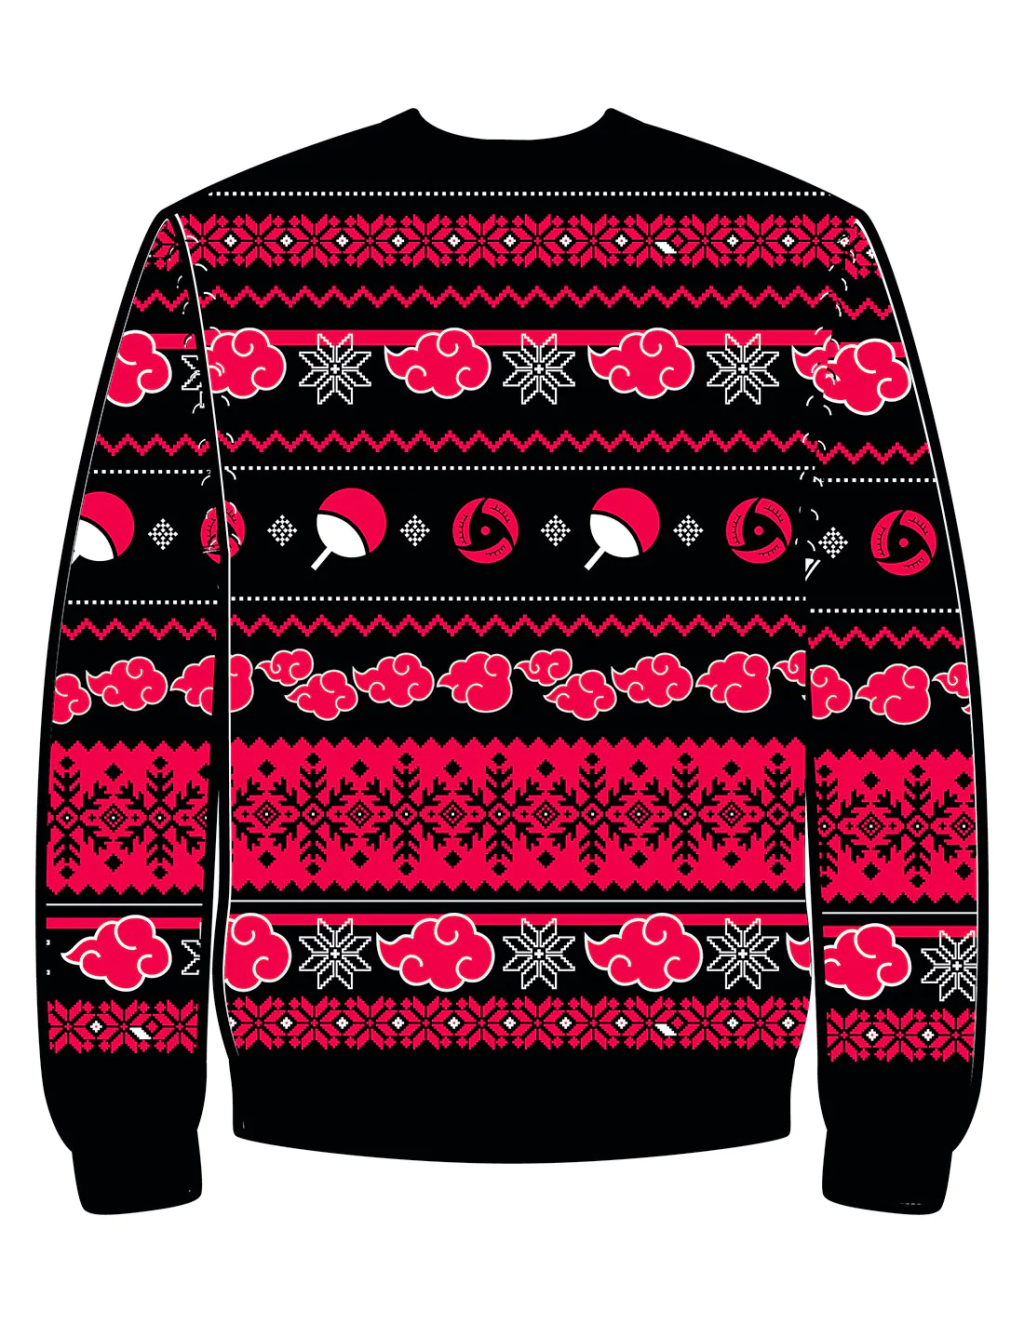 NARUTO SHIPPUDEN - Akatsuki - Men Christmas Sweaters (M)